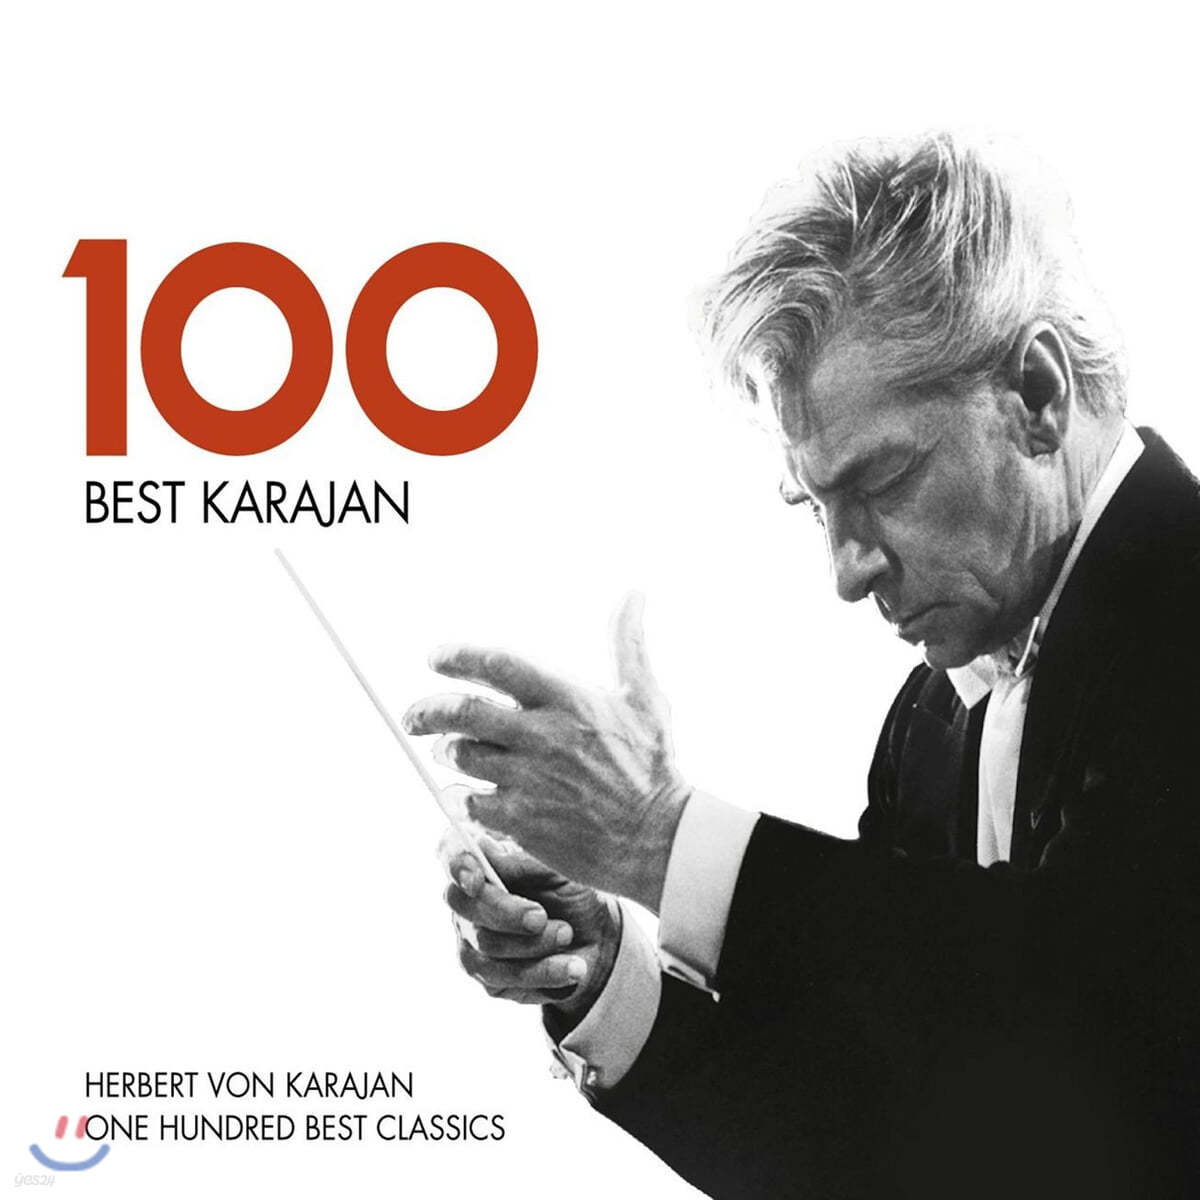 카라얀 베스트 100 (100 Best Karajan)